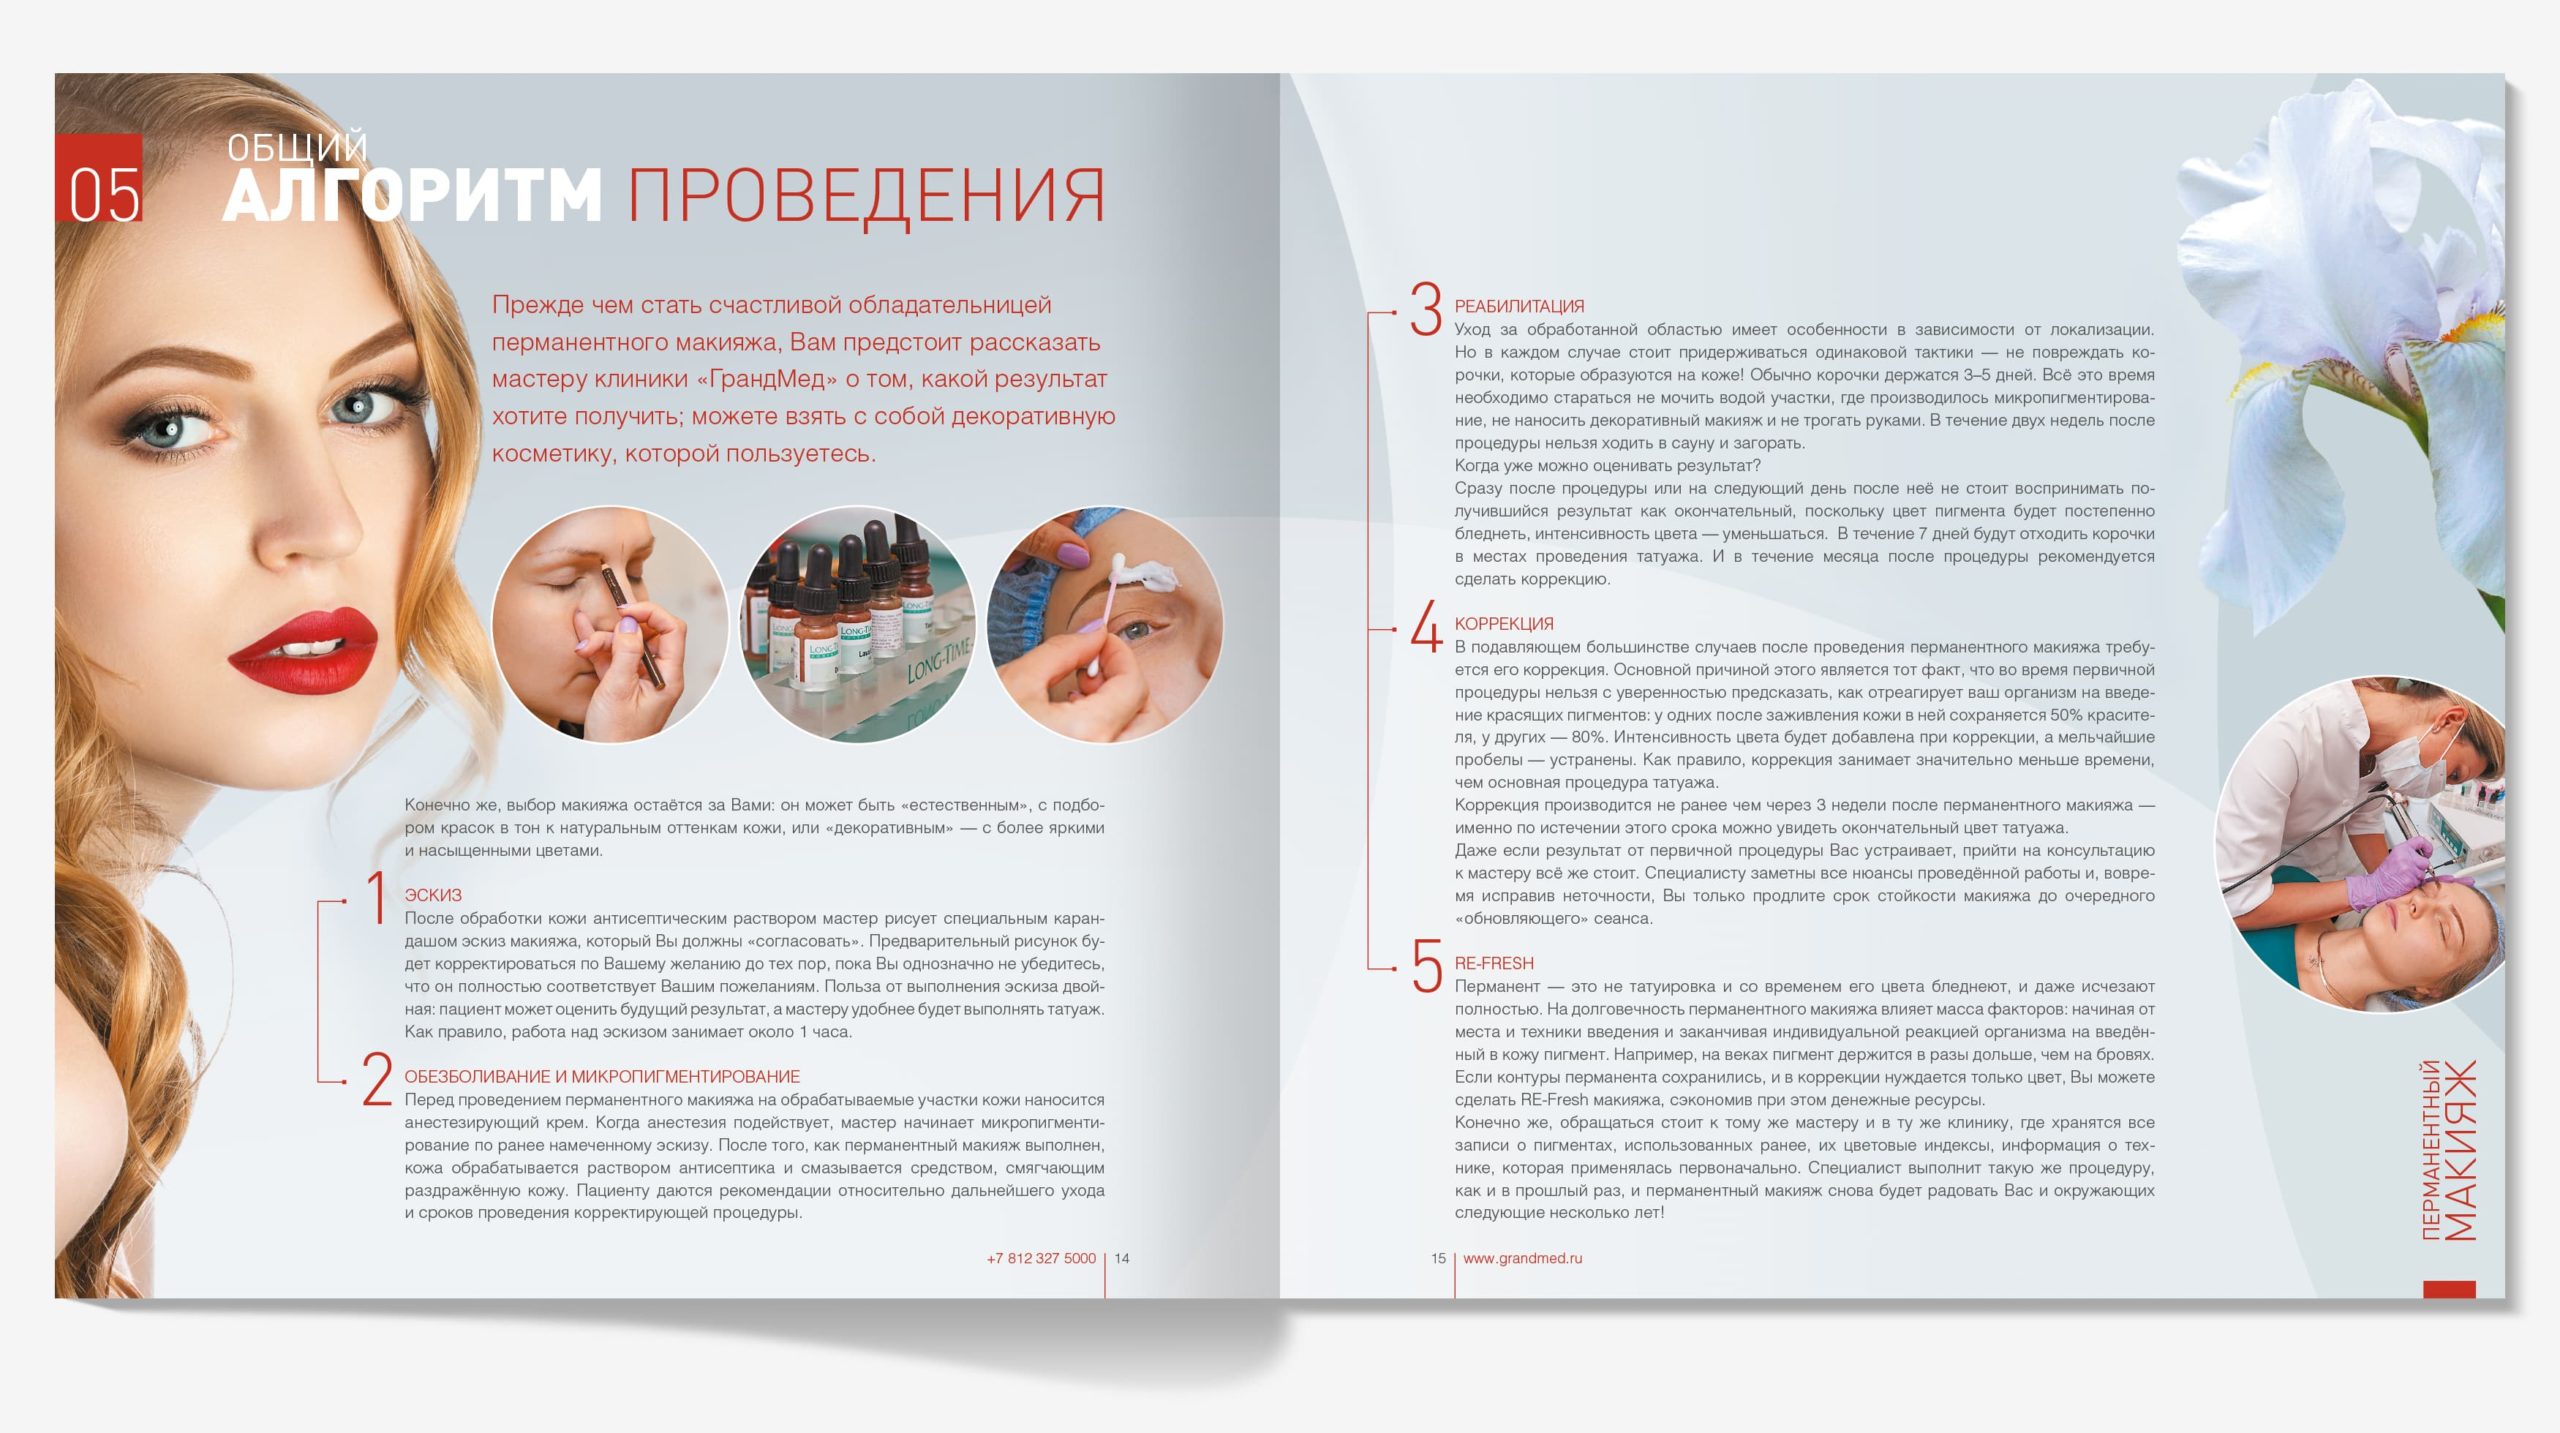 Разработали дизайн брошюры «Перманентное превосходство» для клиники ГрандМед